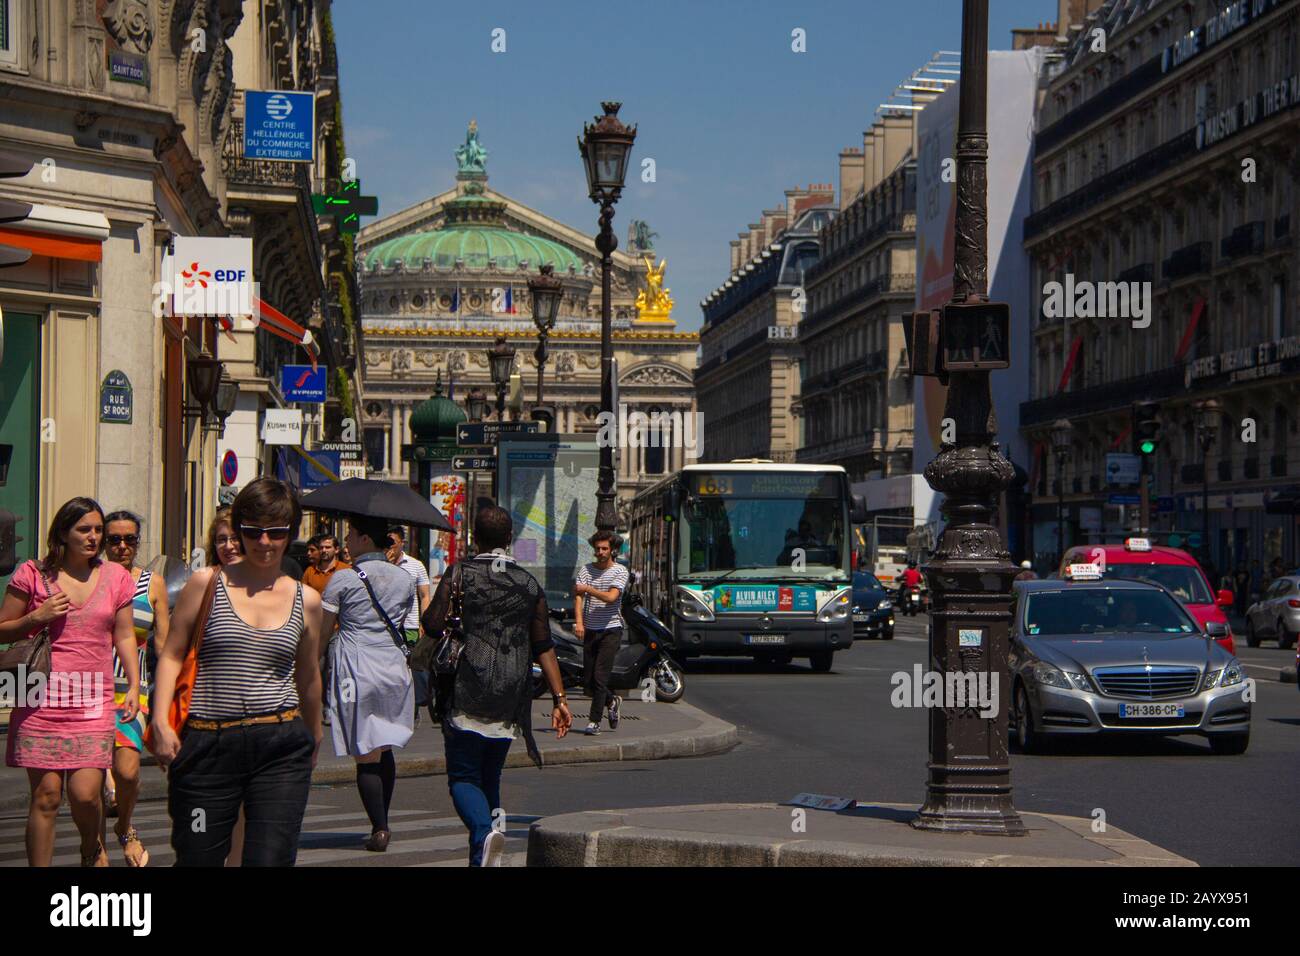 Shoppers on l’Avenue de l’Opera, Paris Stock Photo